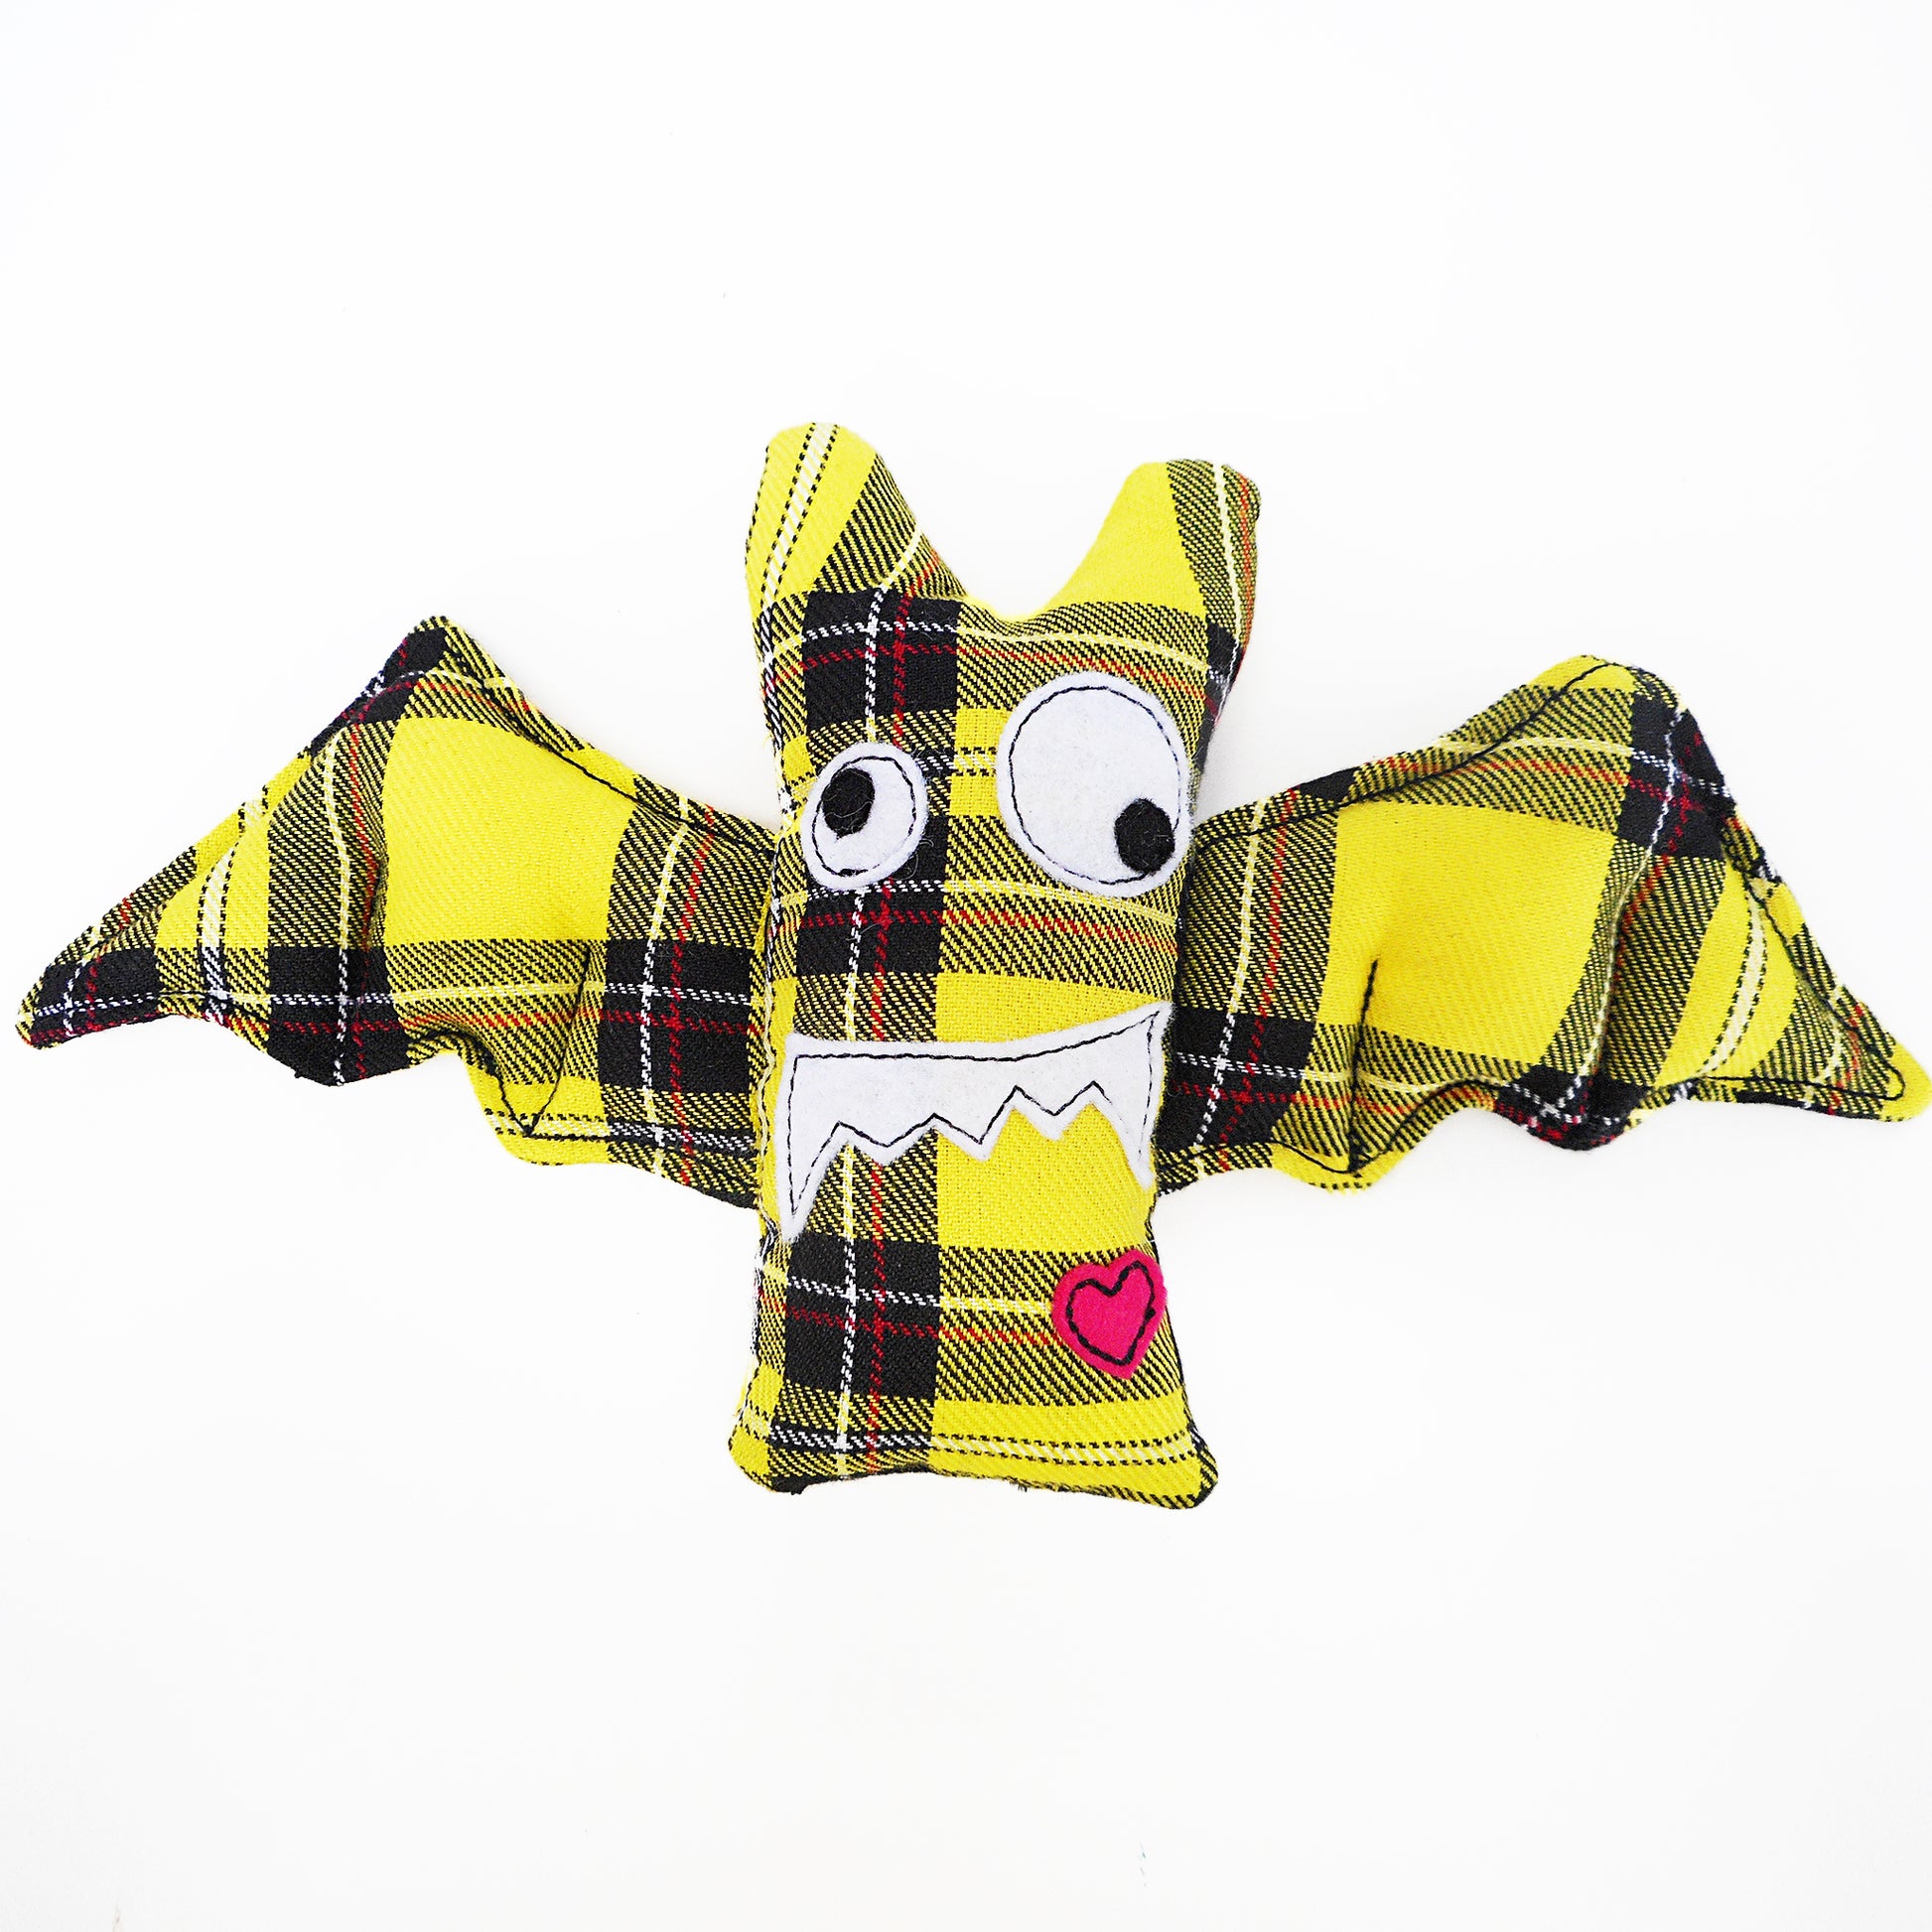 Niedliche handgefertigte Plüsch-Fledermäuse sind aus verschiedenfarbigem Tartanstoff gefertigt. Hier in Gelb.